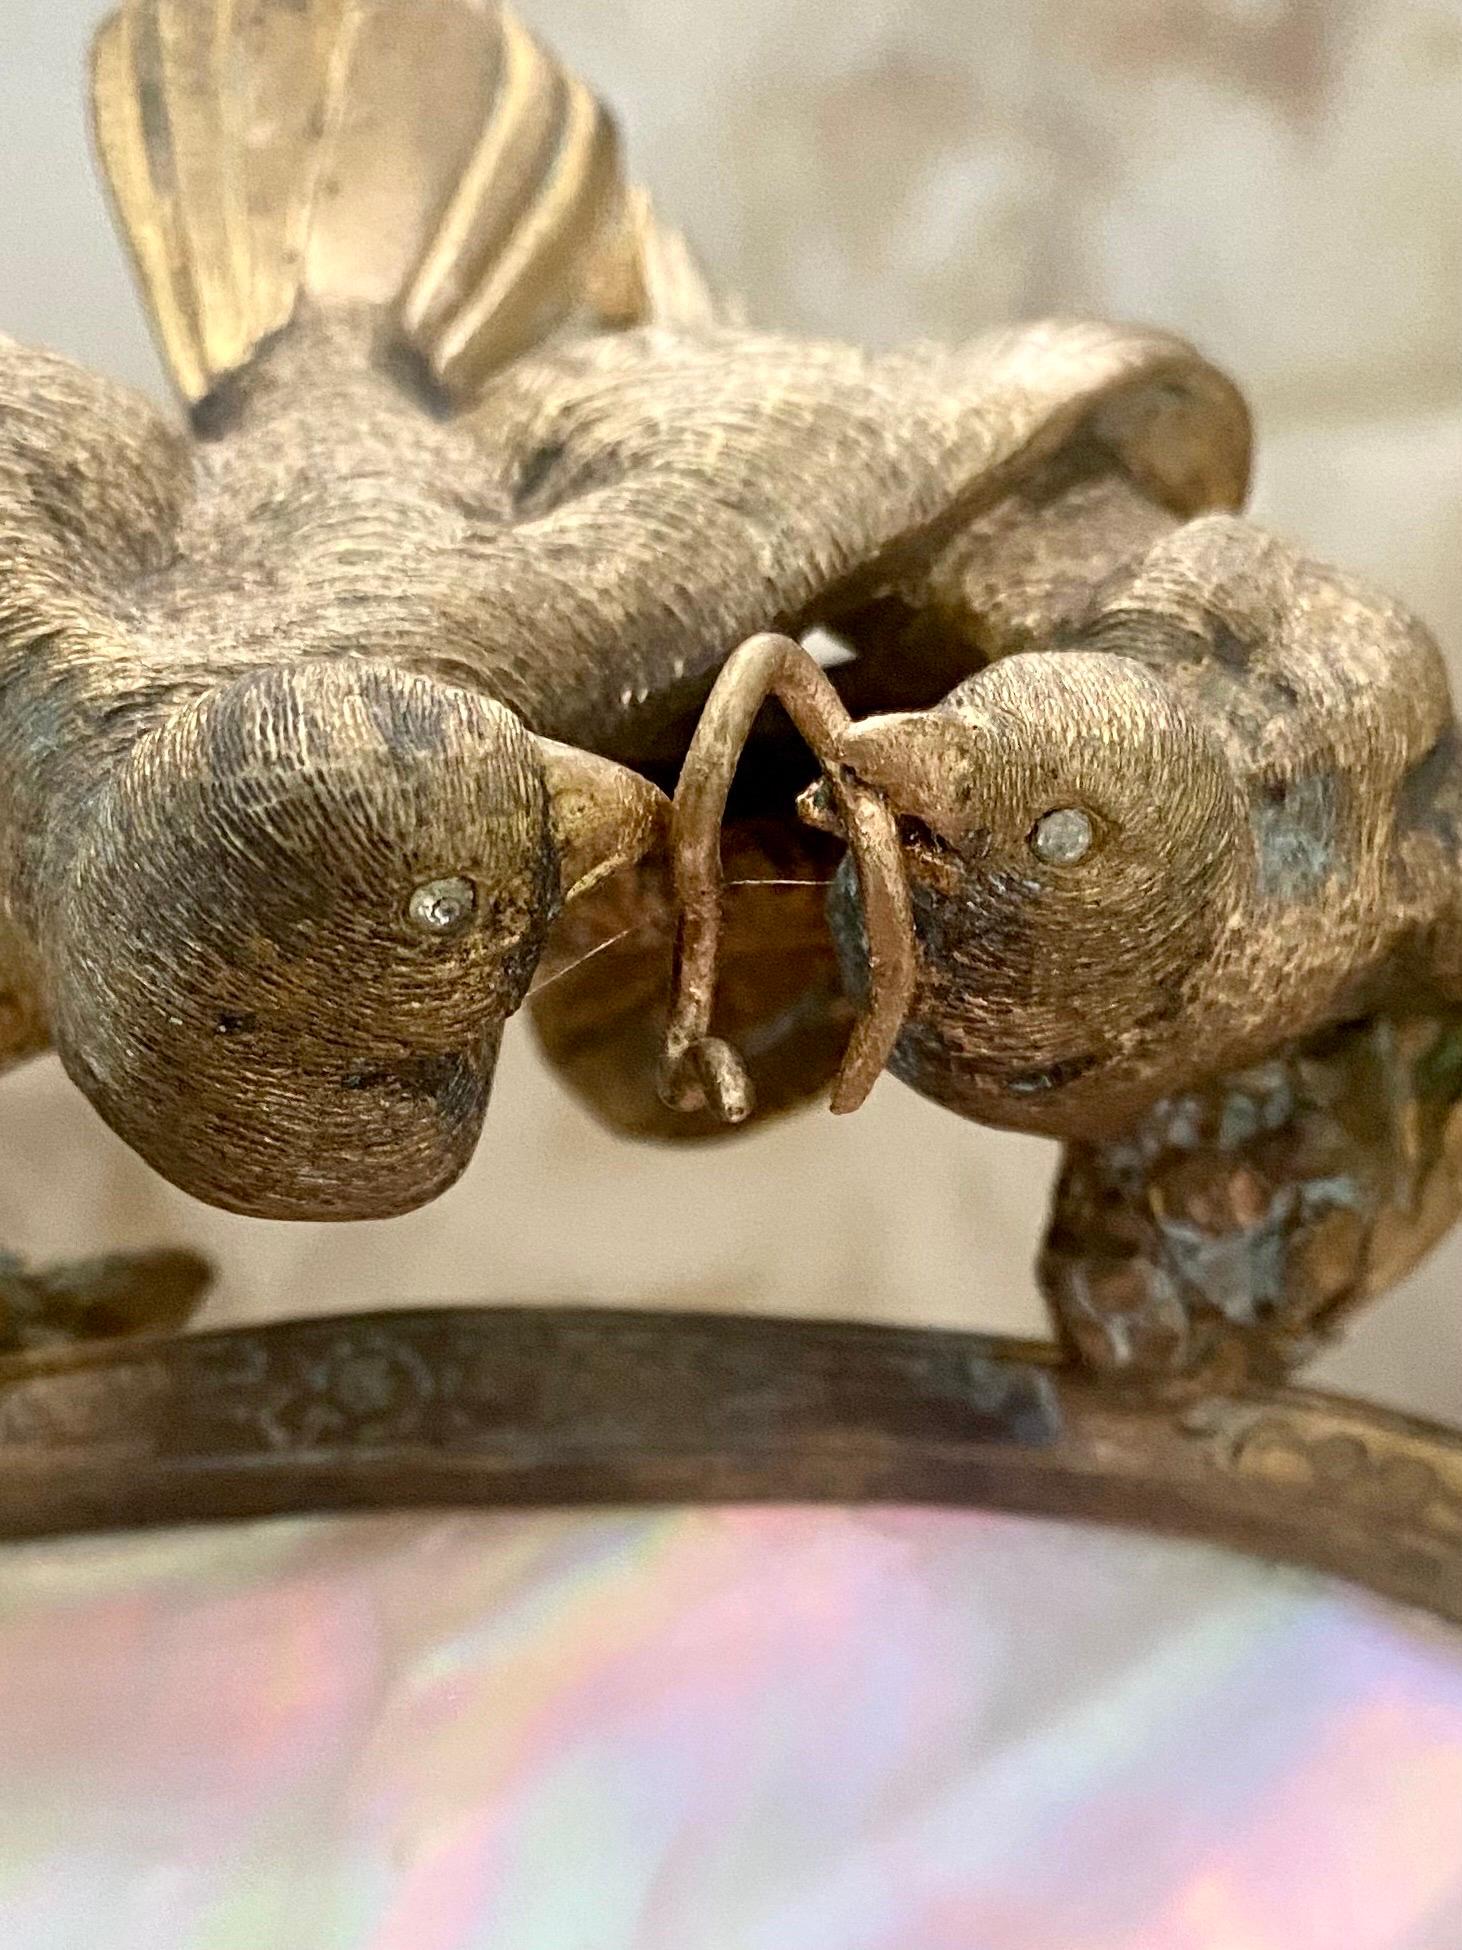 Travail français complexe en bronze doré représentant des tourtereaux partageant un ver au-dessus d'un nid d'œufs de perles sur un arbre, tandis qu'un cobra se niche à la base de l'arbre. L'œuvre est sublime et les yeux bijoutés sont des détails